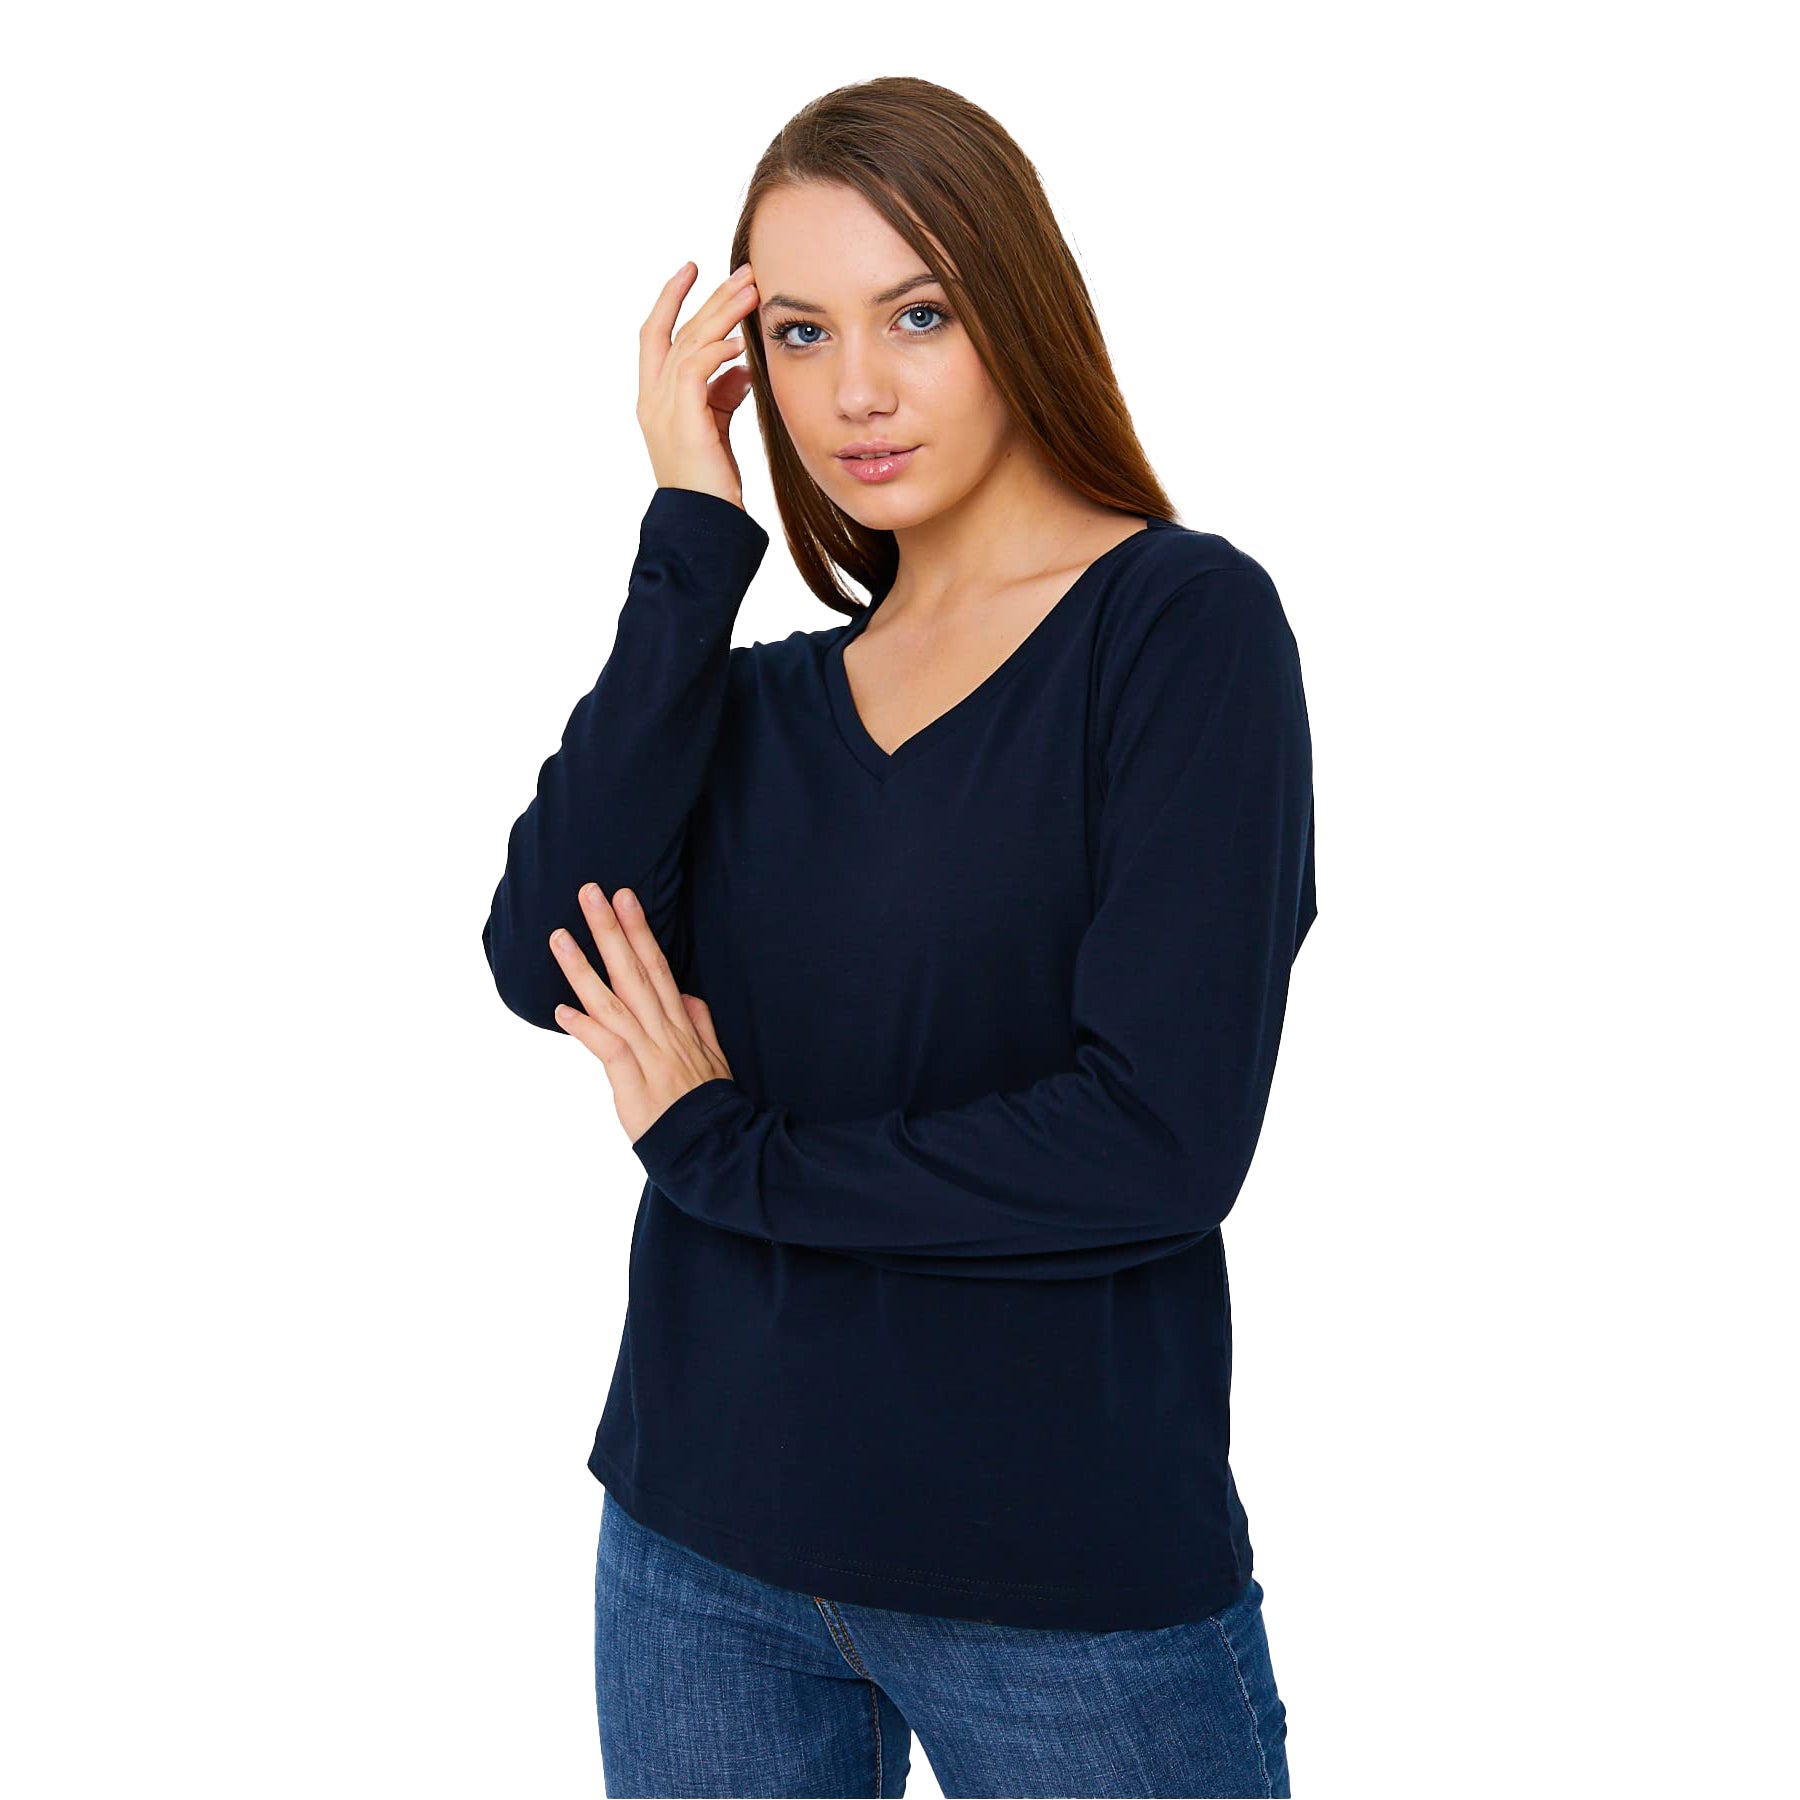 Buy marine Long Sleeve V-Neck Shirts for Women &amp; Girls - Colorful Pima Cotton